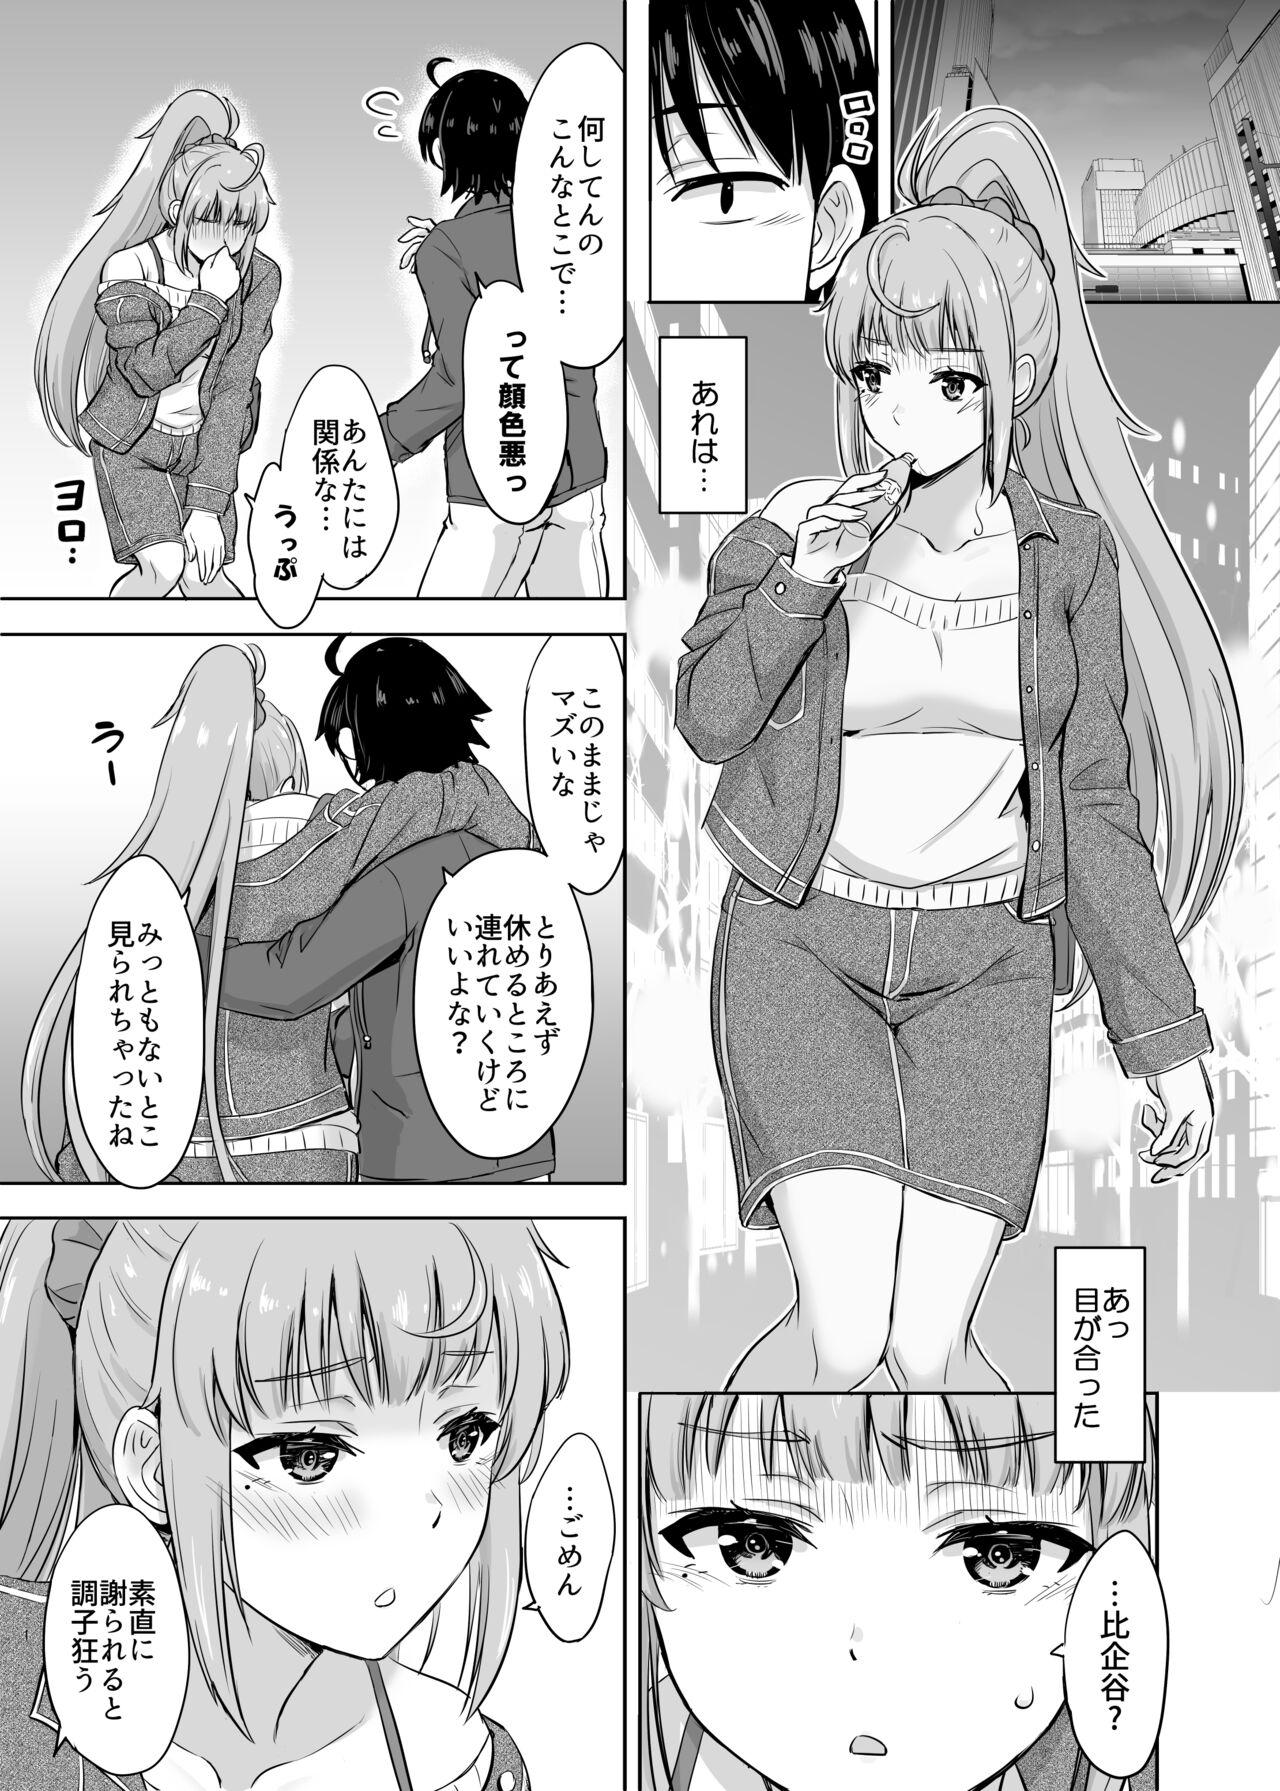 Camshow Ashi-san Saki Saki Manga - Yahari ore no seishun love come wa machigatteiru Rope - Page 1